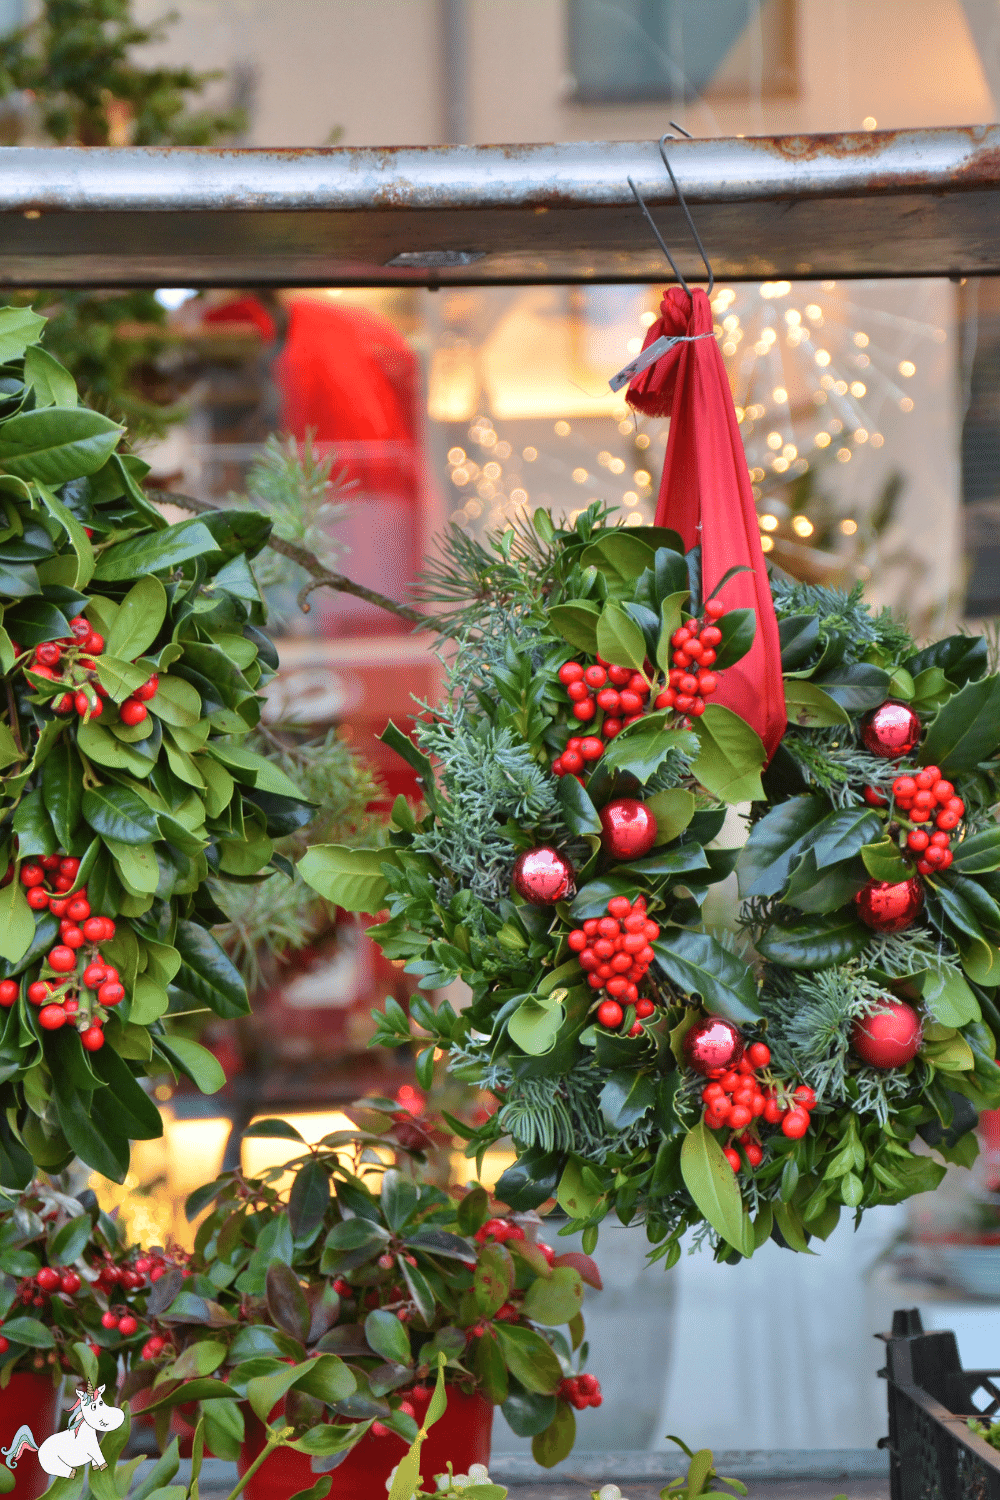 Festive holly wreath